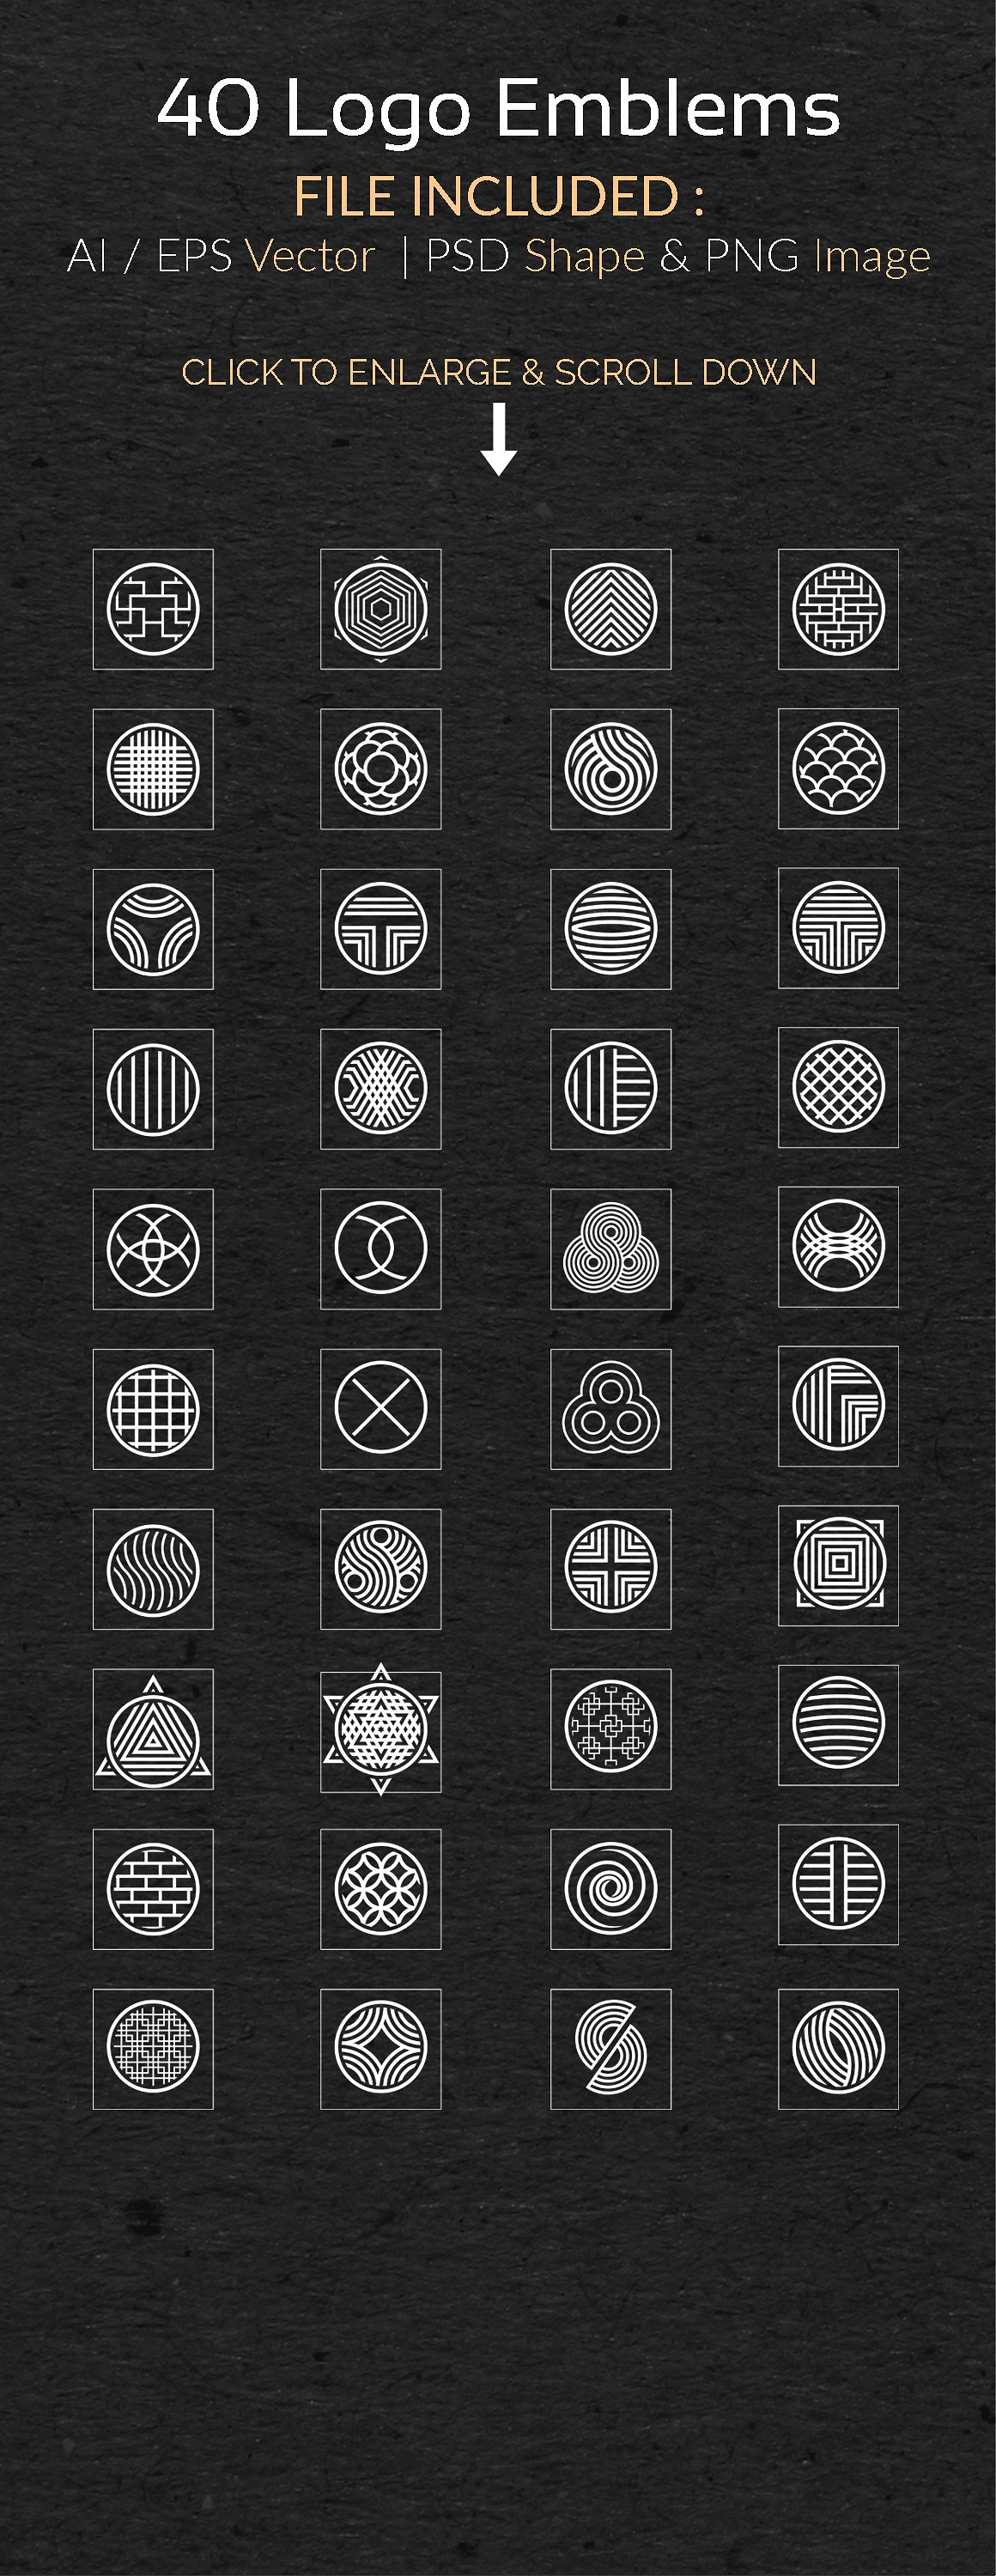 豪华极简主义标志矢量图形集合 Circle Logo Emblems Bundles插图7